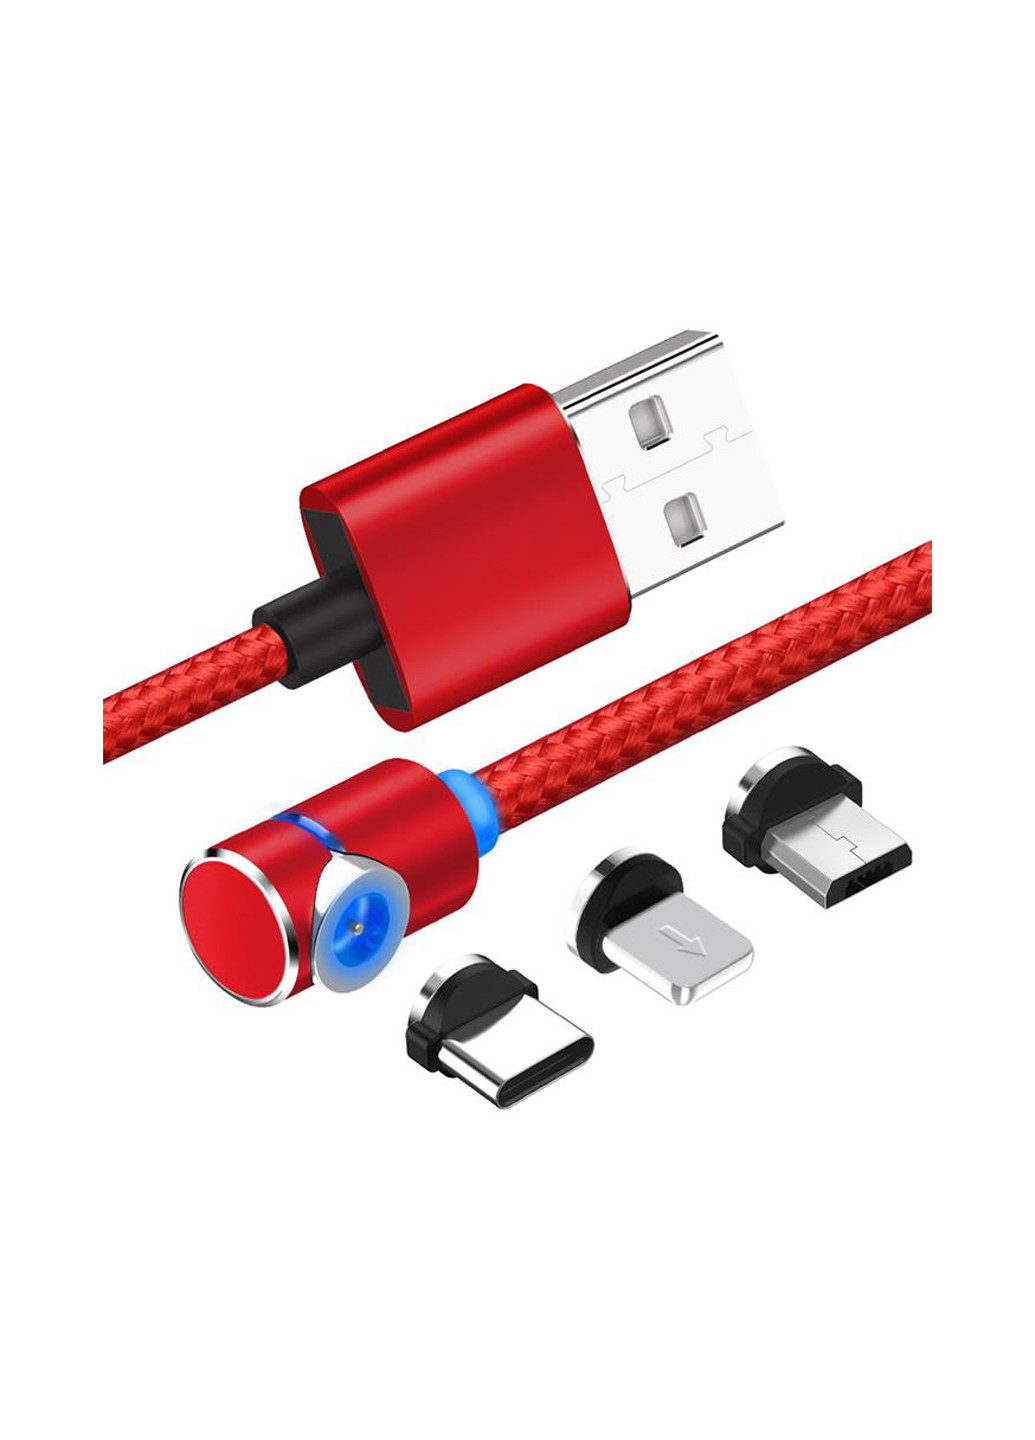 Магнітний кабель USB SC-370 Magneto Game Red 3 в 1 - Lightning, Micro USB, Type-C 1 м (SC-370MGNT-RD) XoKo sc-370 магнитный кабель 3 в 1 - lightning, micro usb, type-c (132572873)